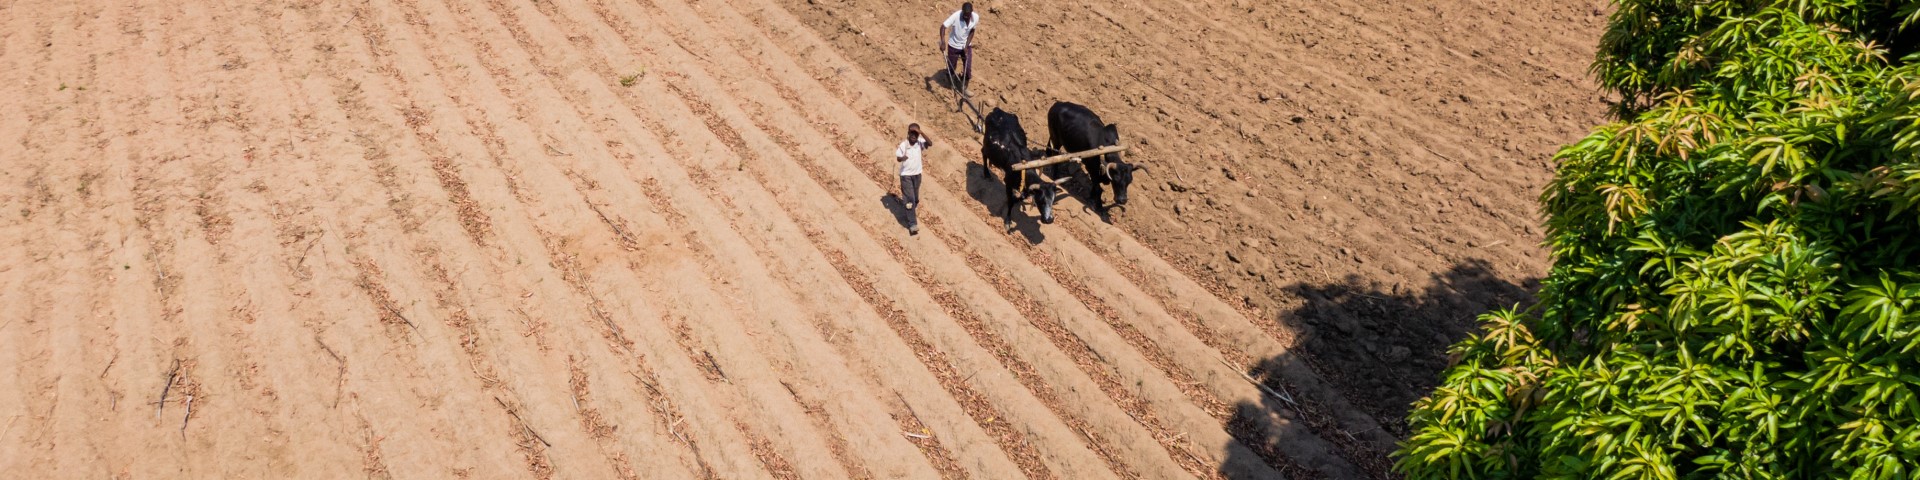 Kleinbauern bearbeiten mit Rindern ein Feld in Ostprovinz in Sambia.